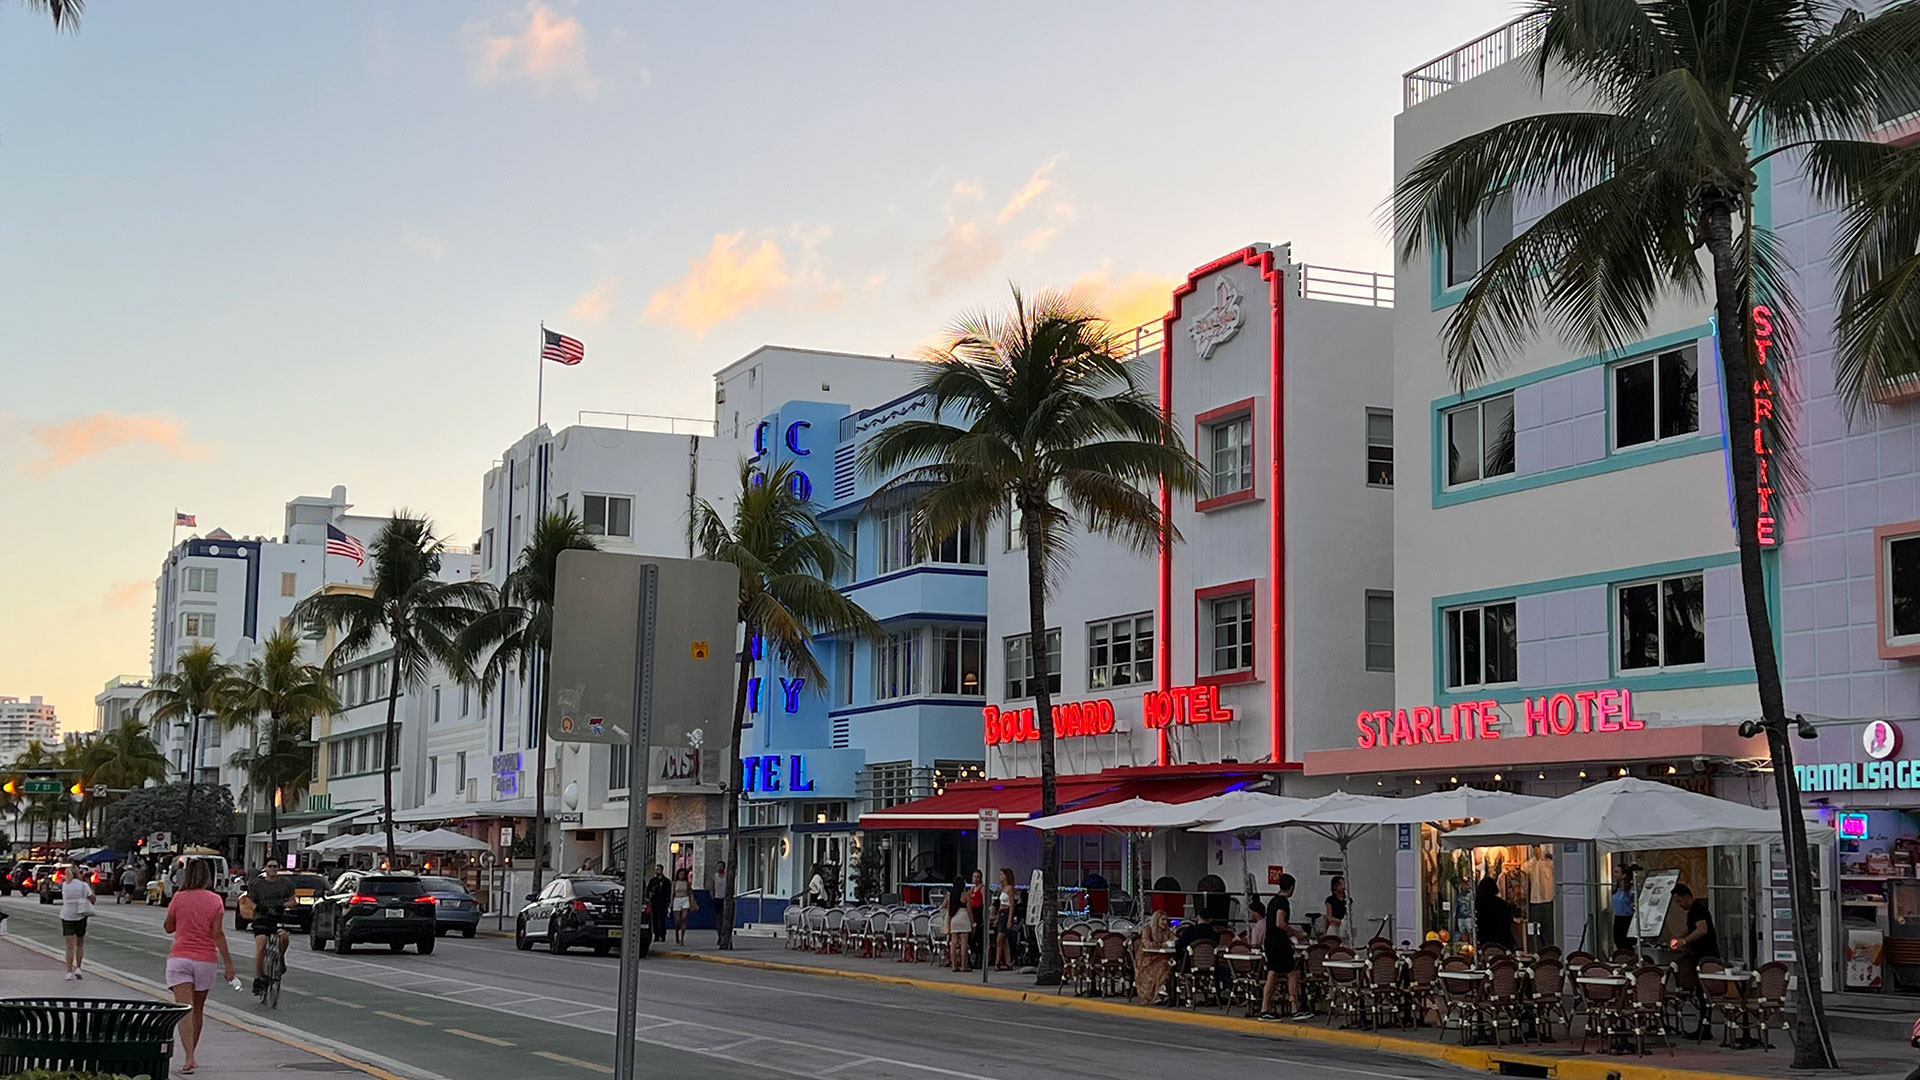 Vista de Ocean Drive con la arquitectura Art Deco que es un símbolo importante de la historia y la cultura de Miami Beach, y es una atracción turística muy popular para aquellos interesados en el arte, la arquitectura y la historia. (Foto: Opy Morales)